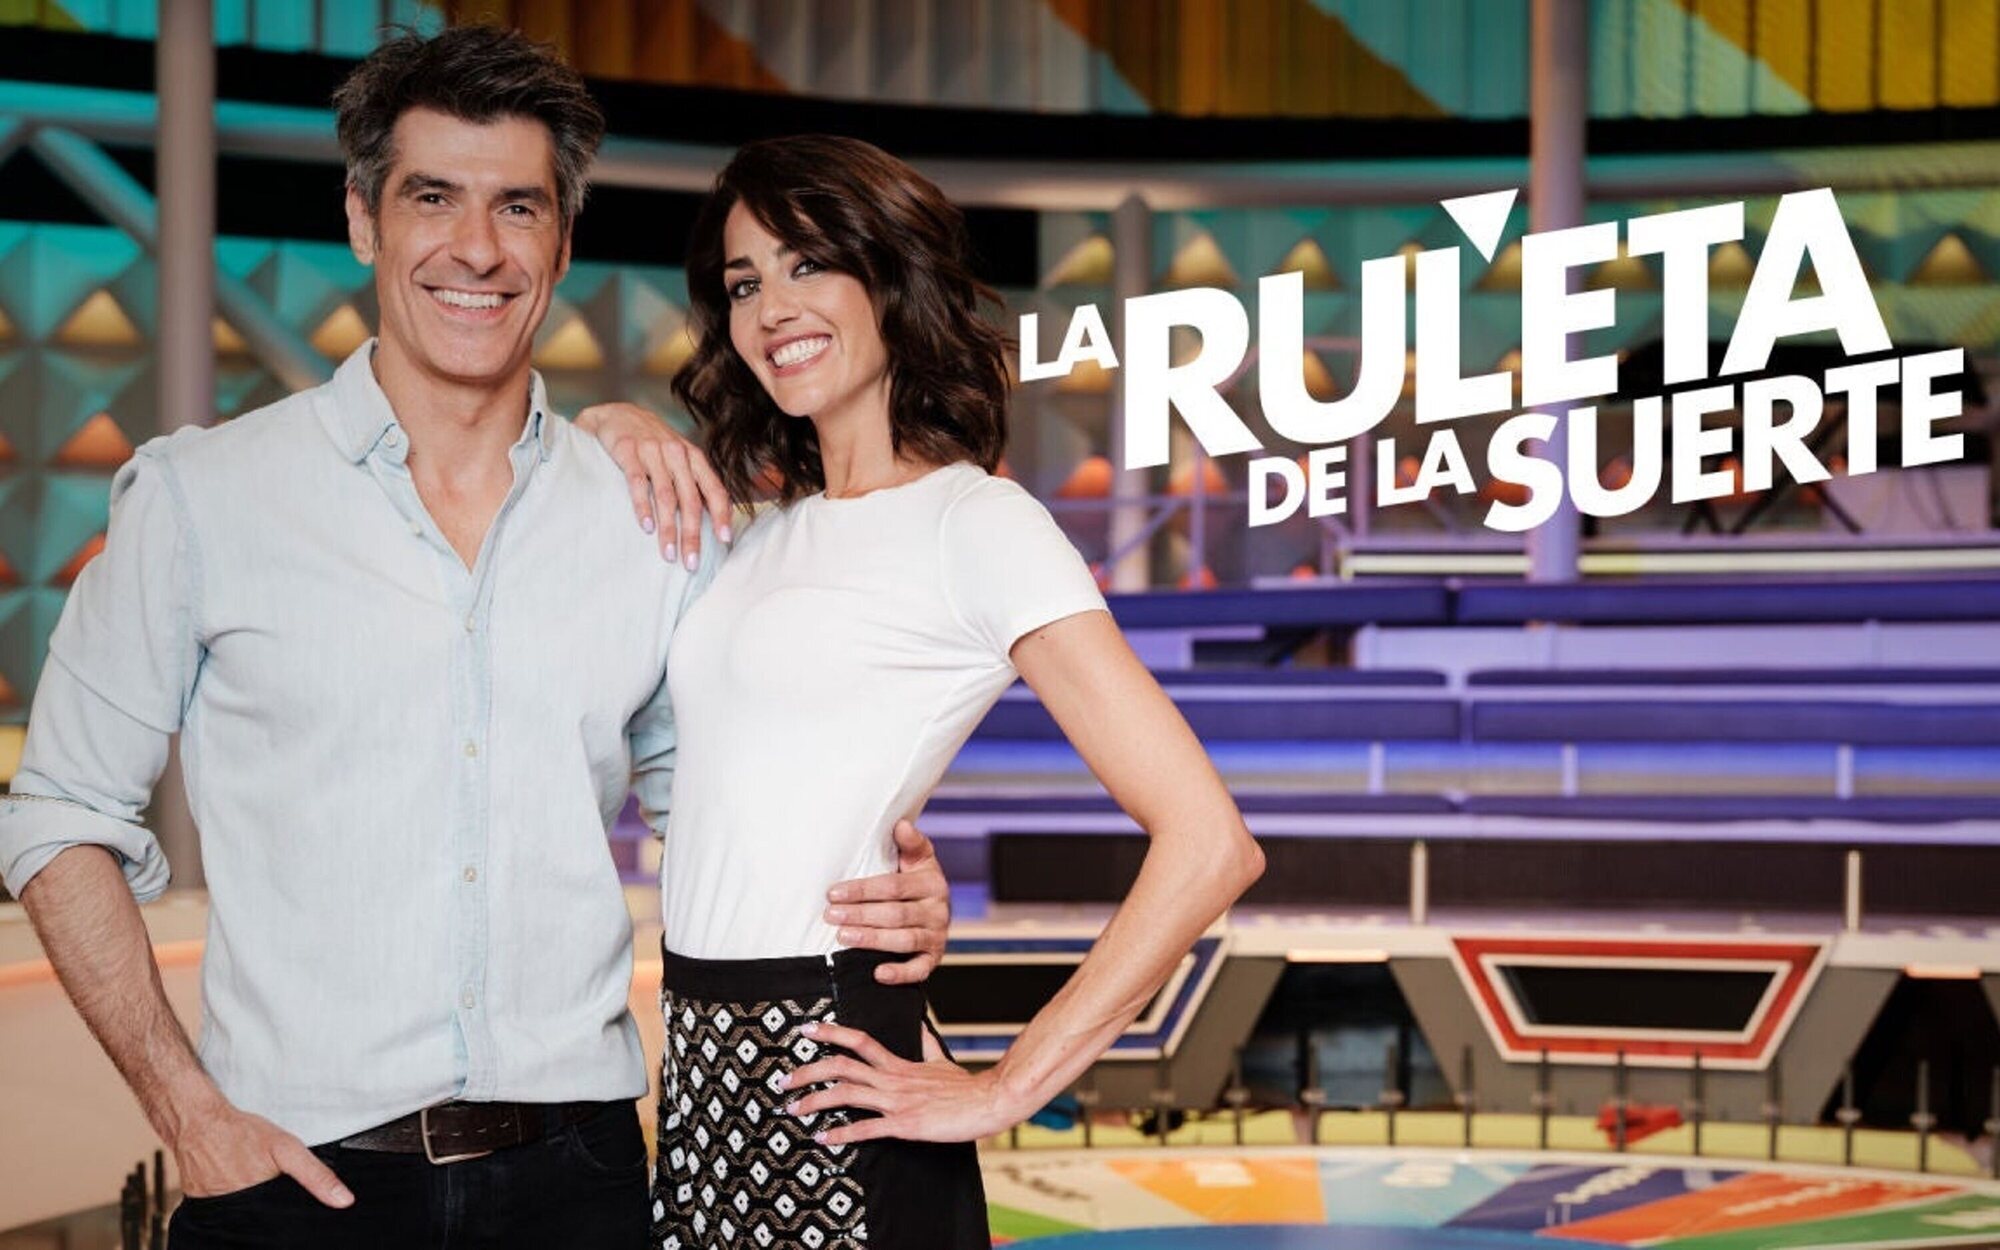 'La ruleta de la suerte' "gira" con éxito con sus reposiciones: Así rinde contra 'Socialité' en el fin de semana